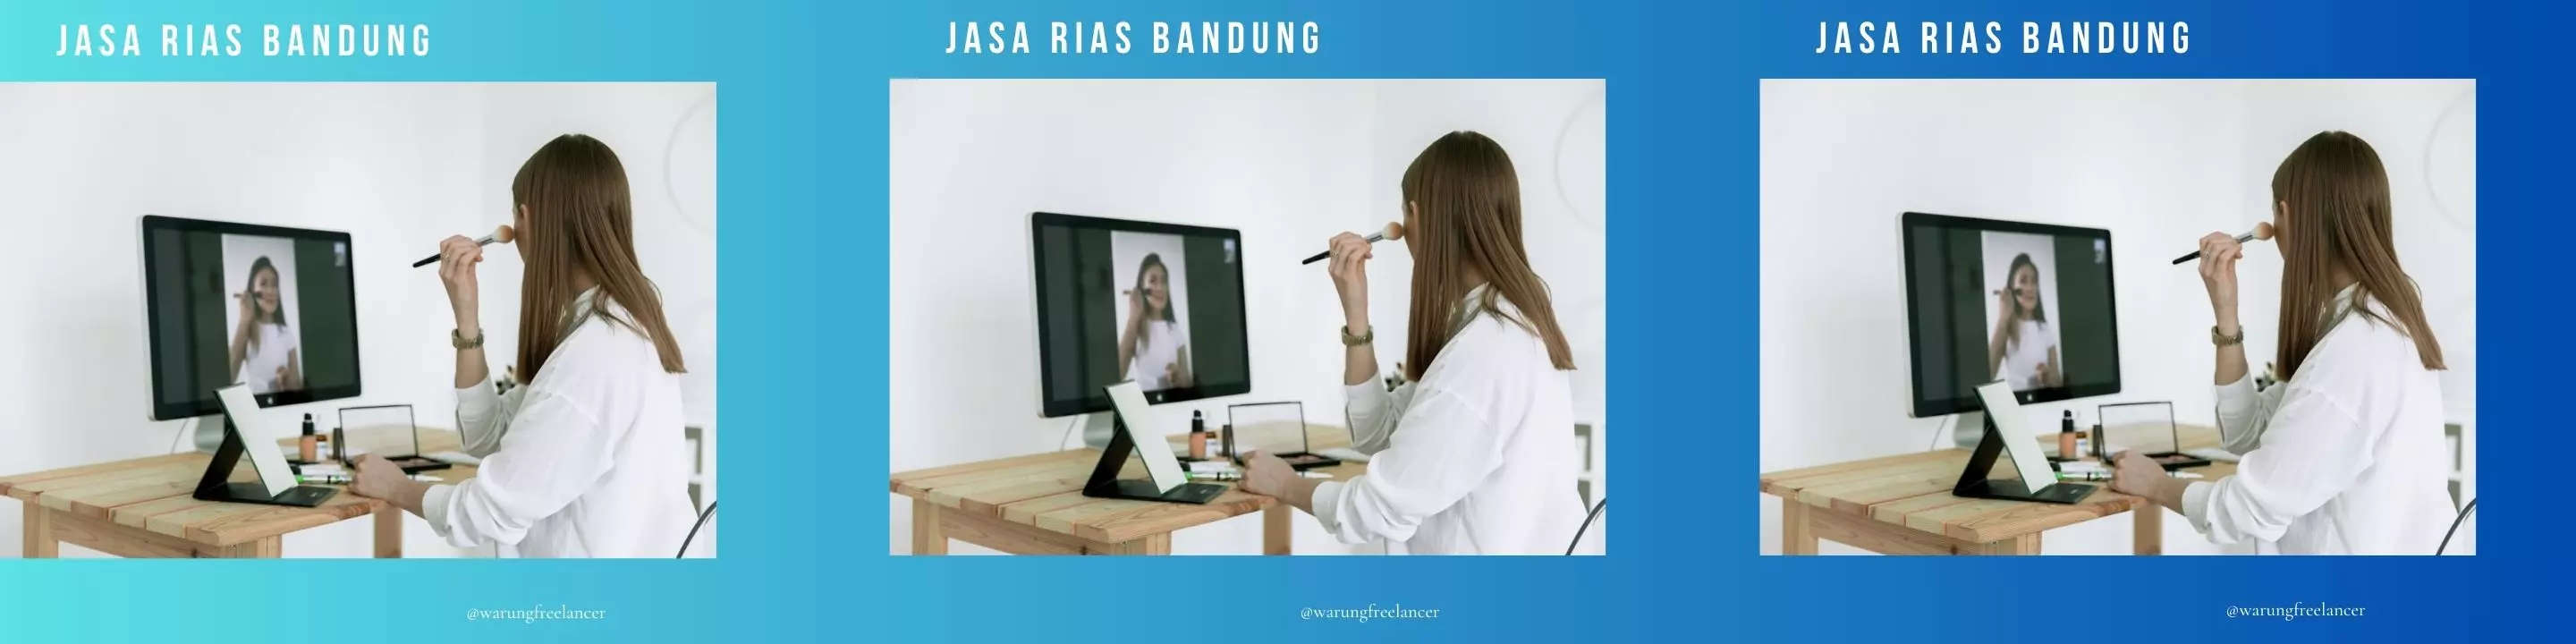 Jasa Rias Bandung